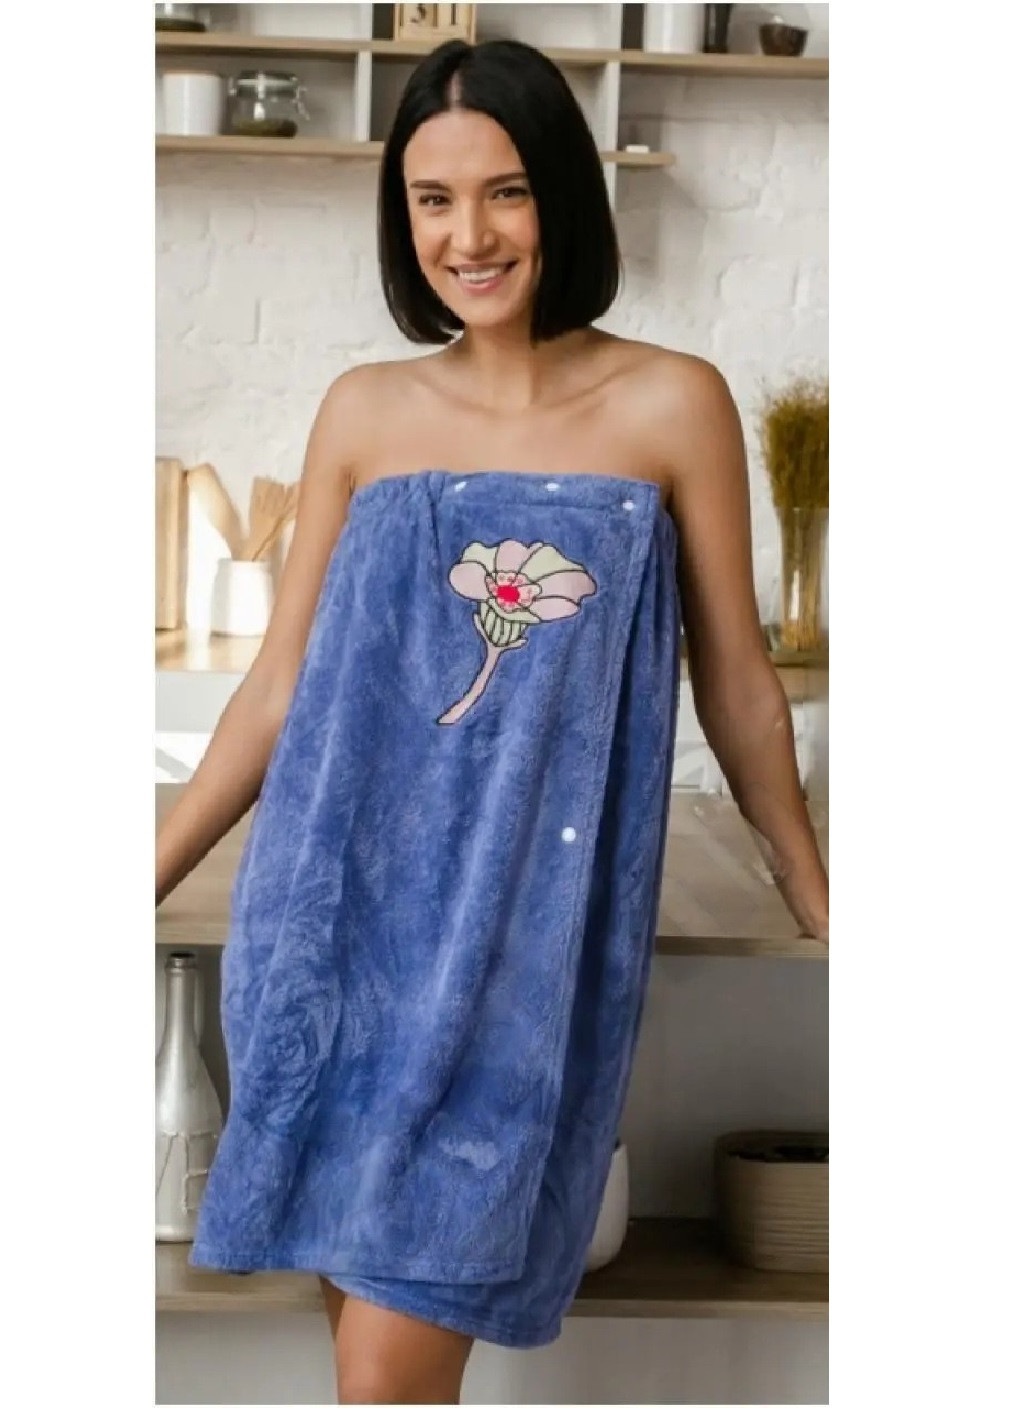 Unbranded полотенце халат на резинке для бани ванны сауны для тела микрофибра впитывает воду 150х80 см (474298-prob) орхидея синее цветочный синий производство -